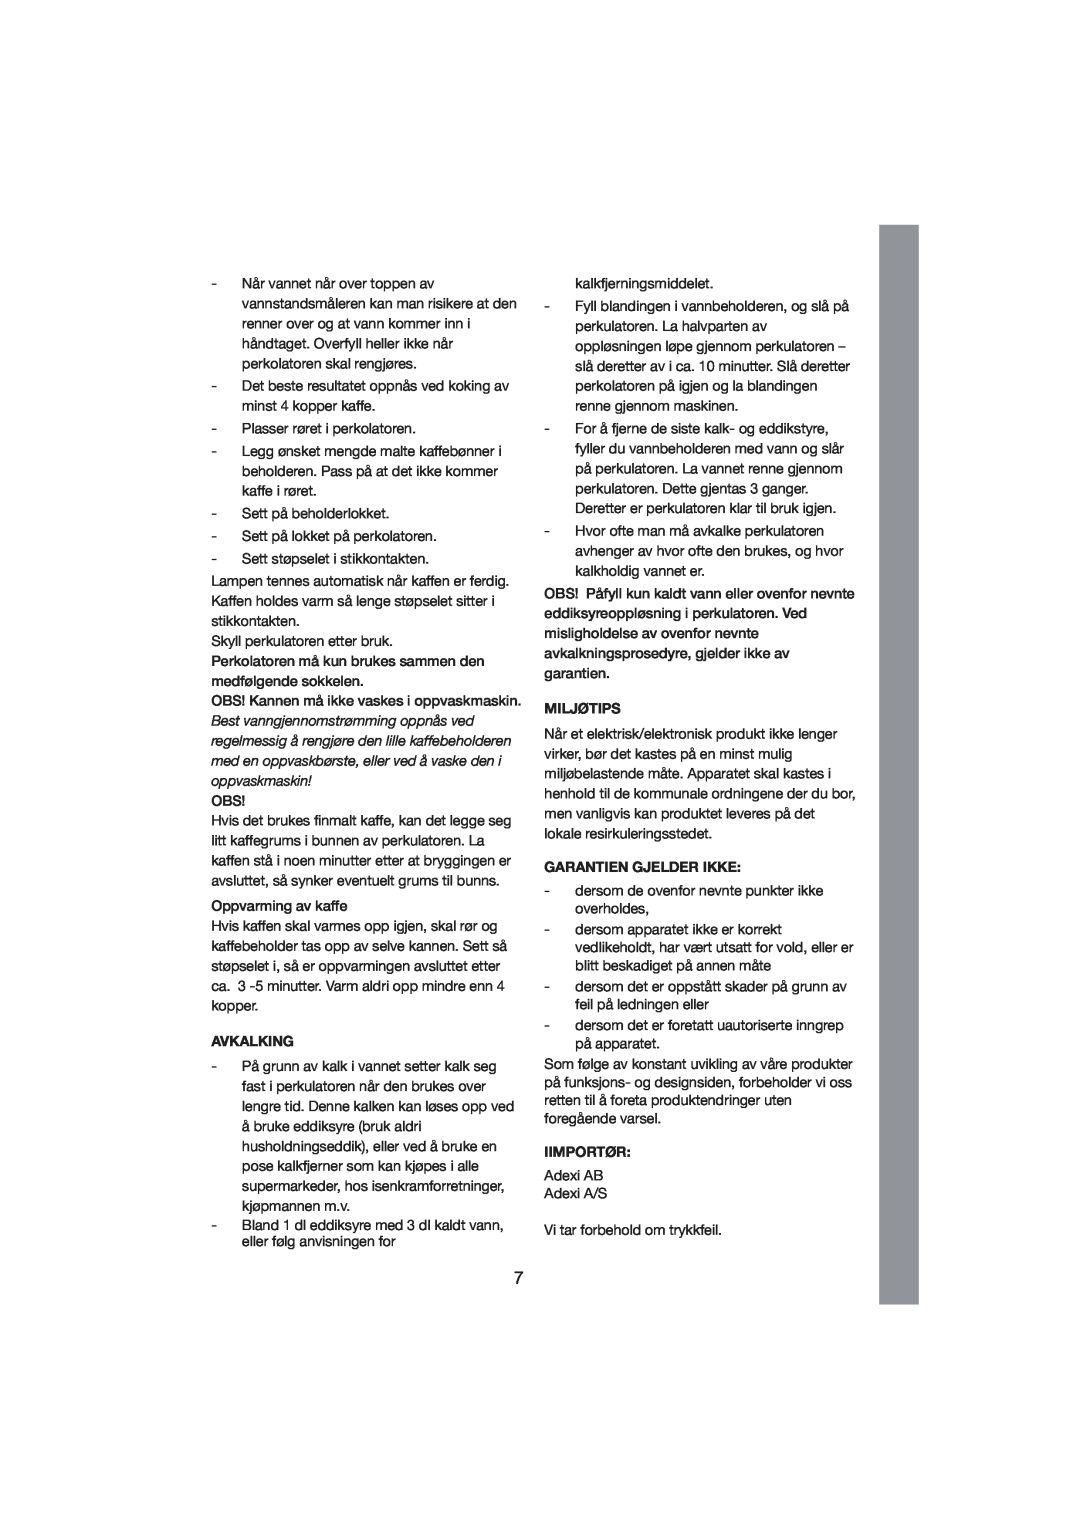 Exido 245-011/012 manual Avkalking, Miljøtips, Garantien Gjelder Ikke, Iimportør 